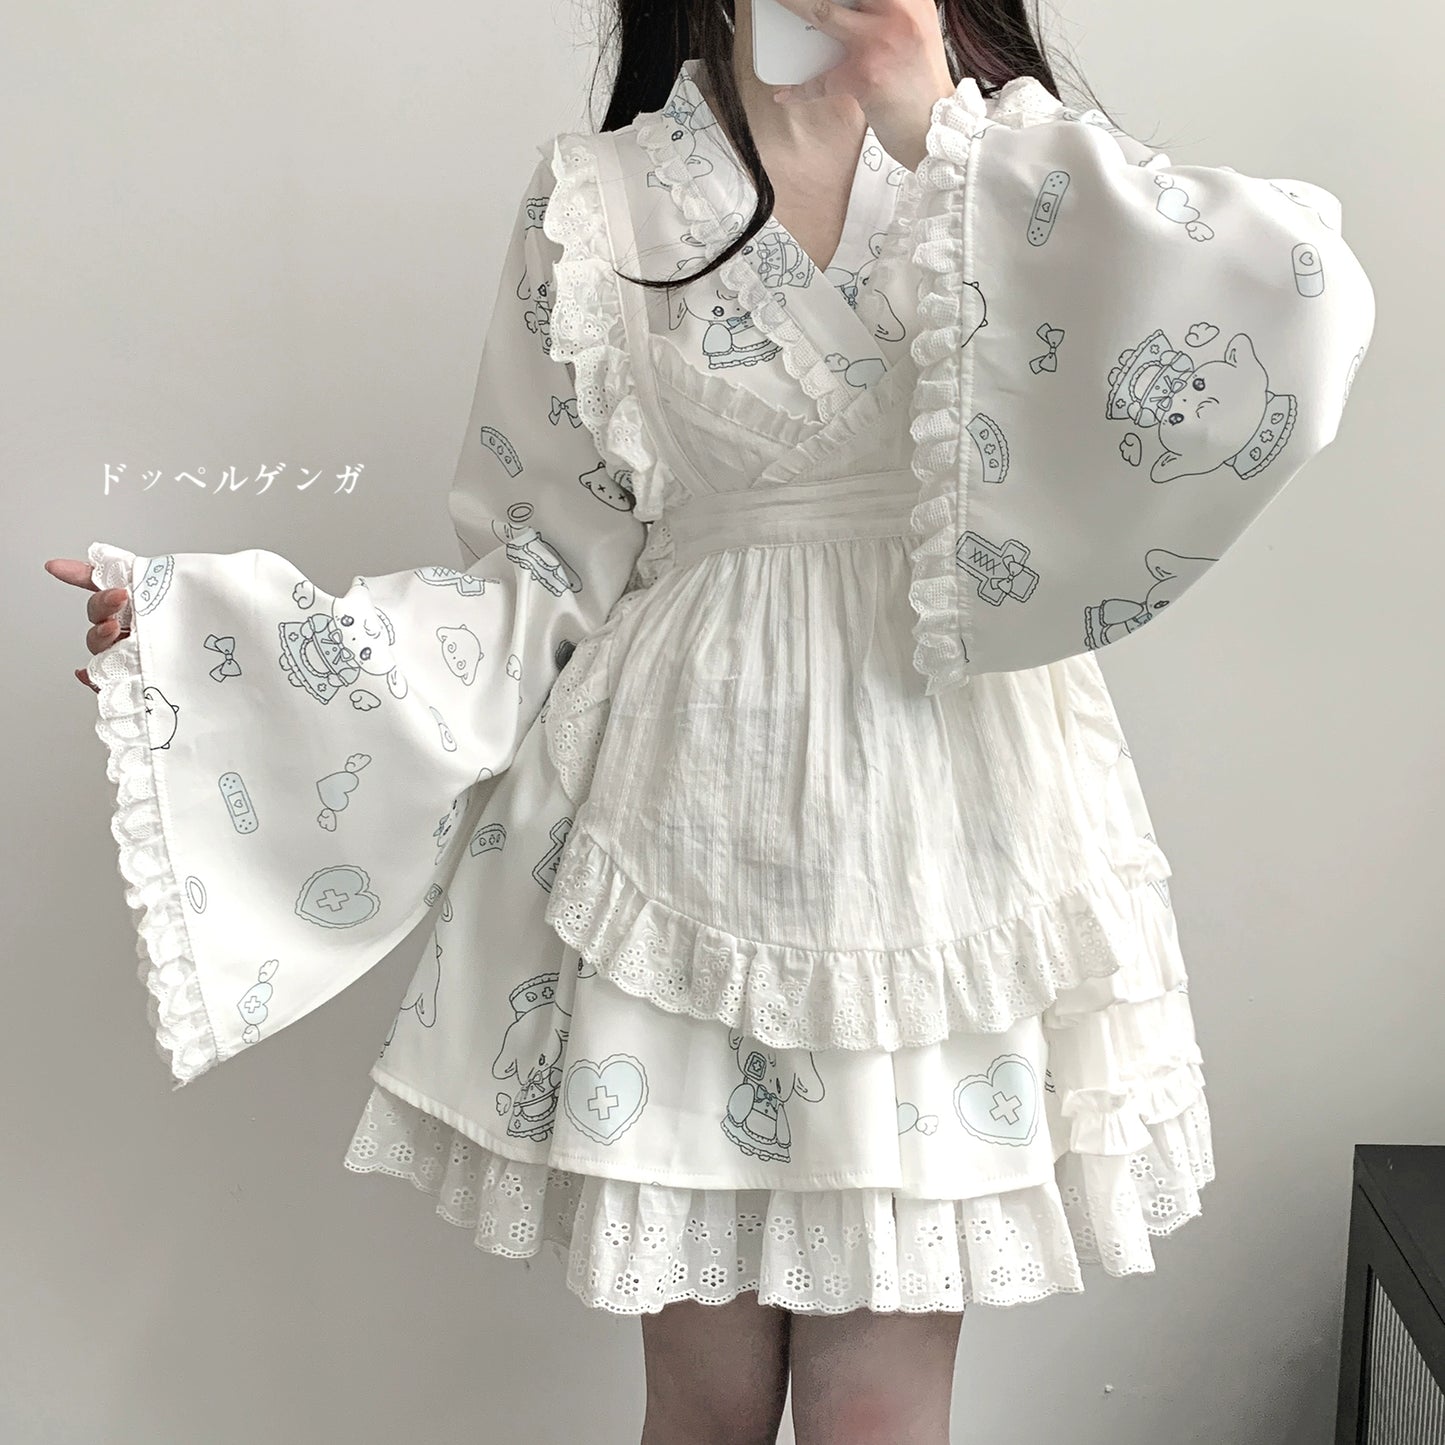 Tenshi Kaiwai Patchwork Skirt Kimono Top White Apron Three-Piece Set 36786:536682